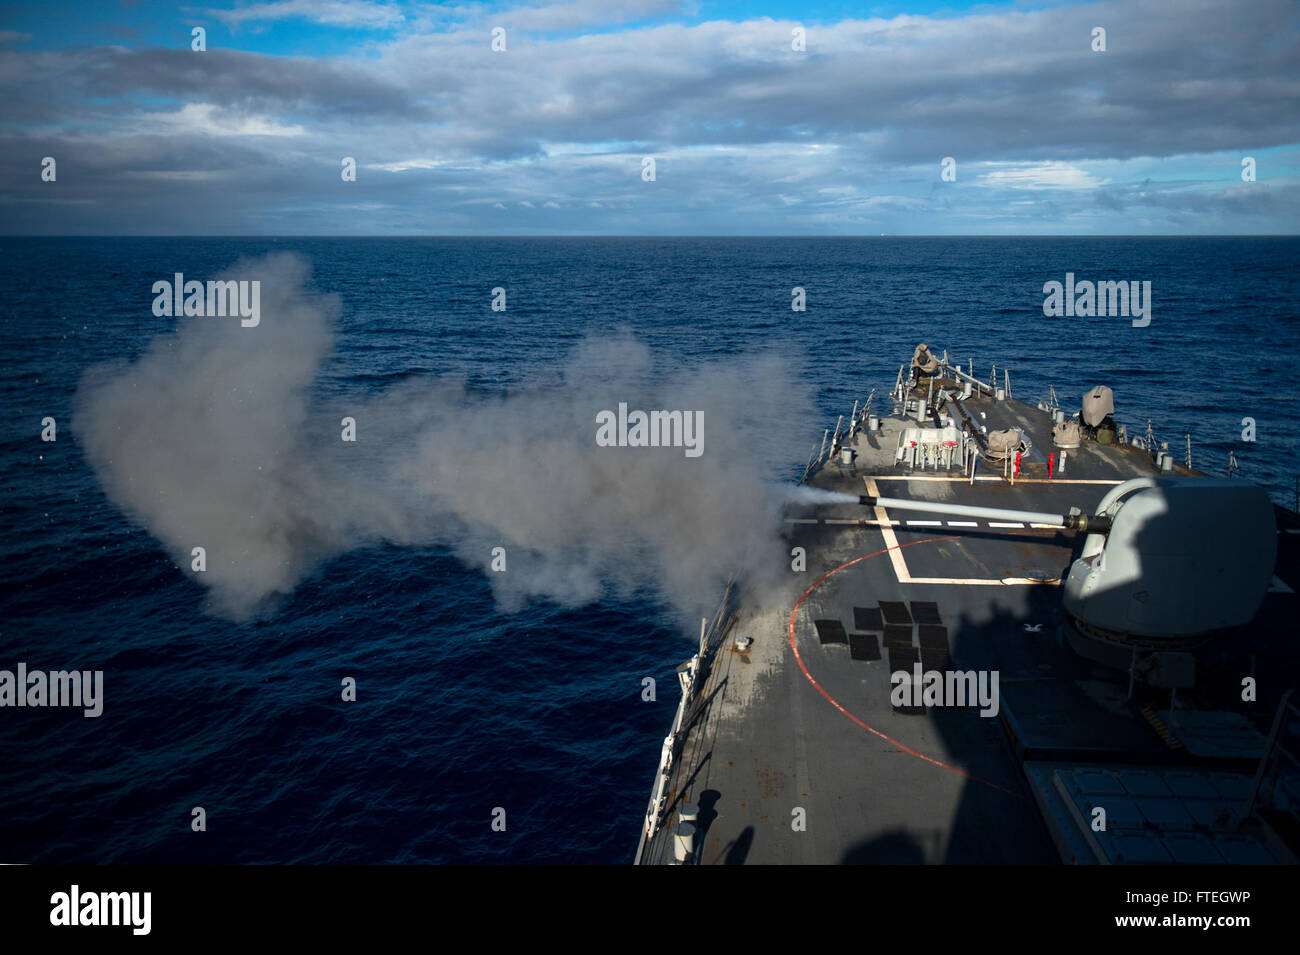 Mar Mediterráneo (Oct. 7, 2014) El misil guiado por el destructor USS Arleigh Burke (DDG 51) incendios su MK 45 pistola de 5 pulgadas durante un ejercicio de fuego vivo. Arleigh Burke, homeported en Norfolk, Virginia, es la realización de las operaciones navales en los EE.UU. 6ª Flota de la zona de operaciones en apoyo de los intereses de seguridad nacional de EE.UU. en Europa. Foto de stock